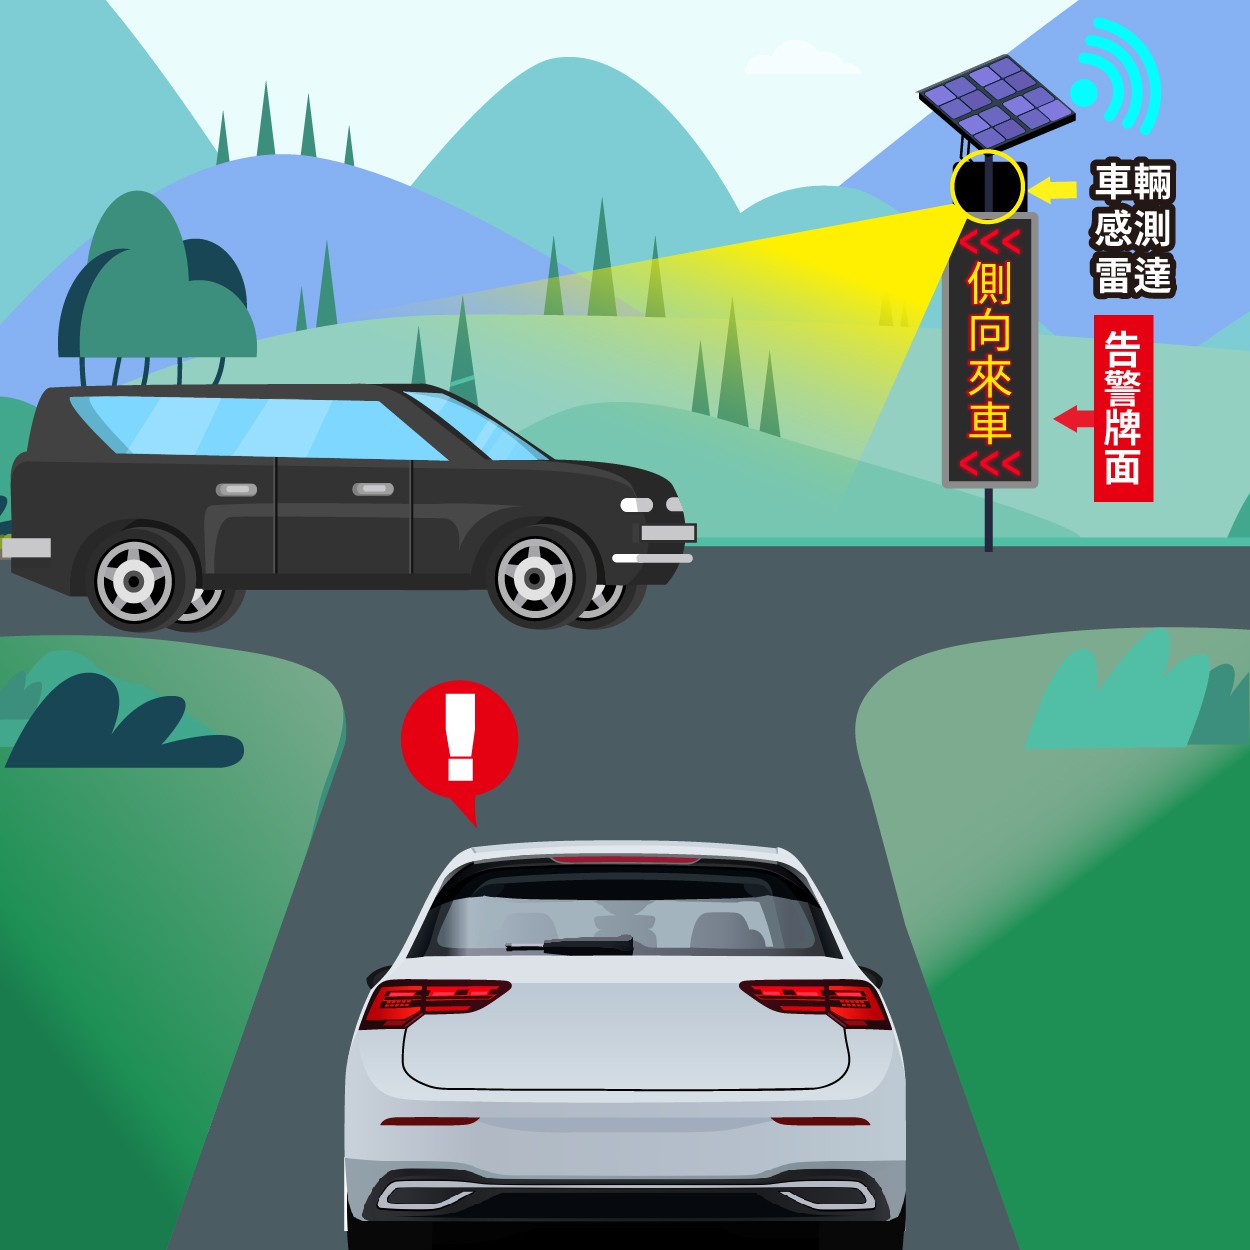 一般規格：智慧路標—無號誌路口來車偵測預先告警系統logo圖